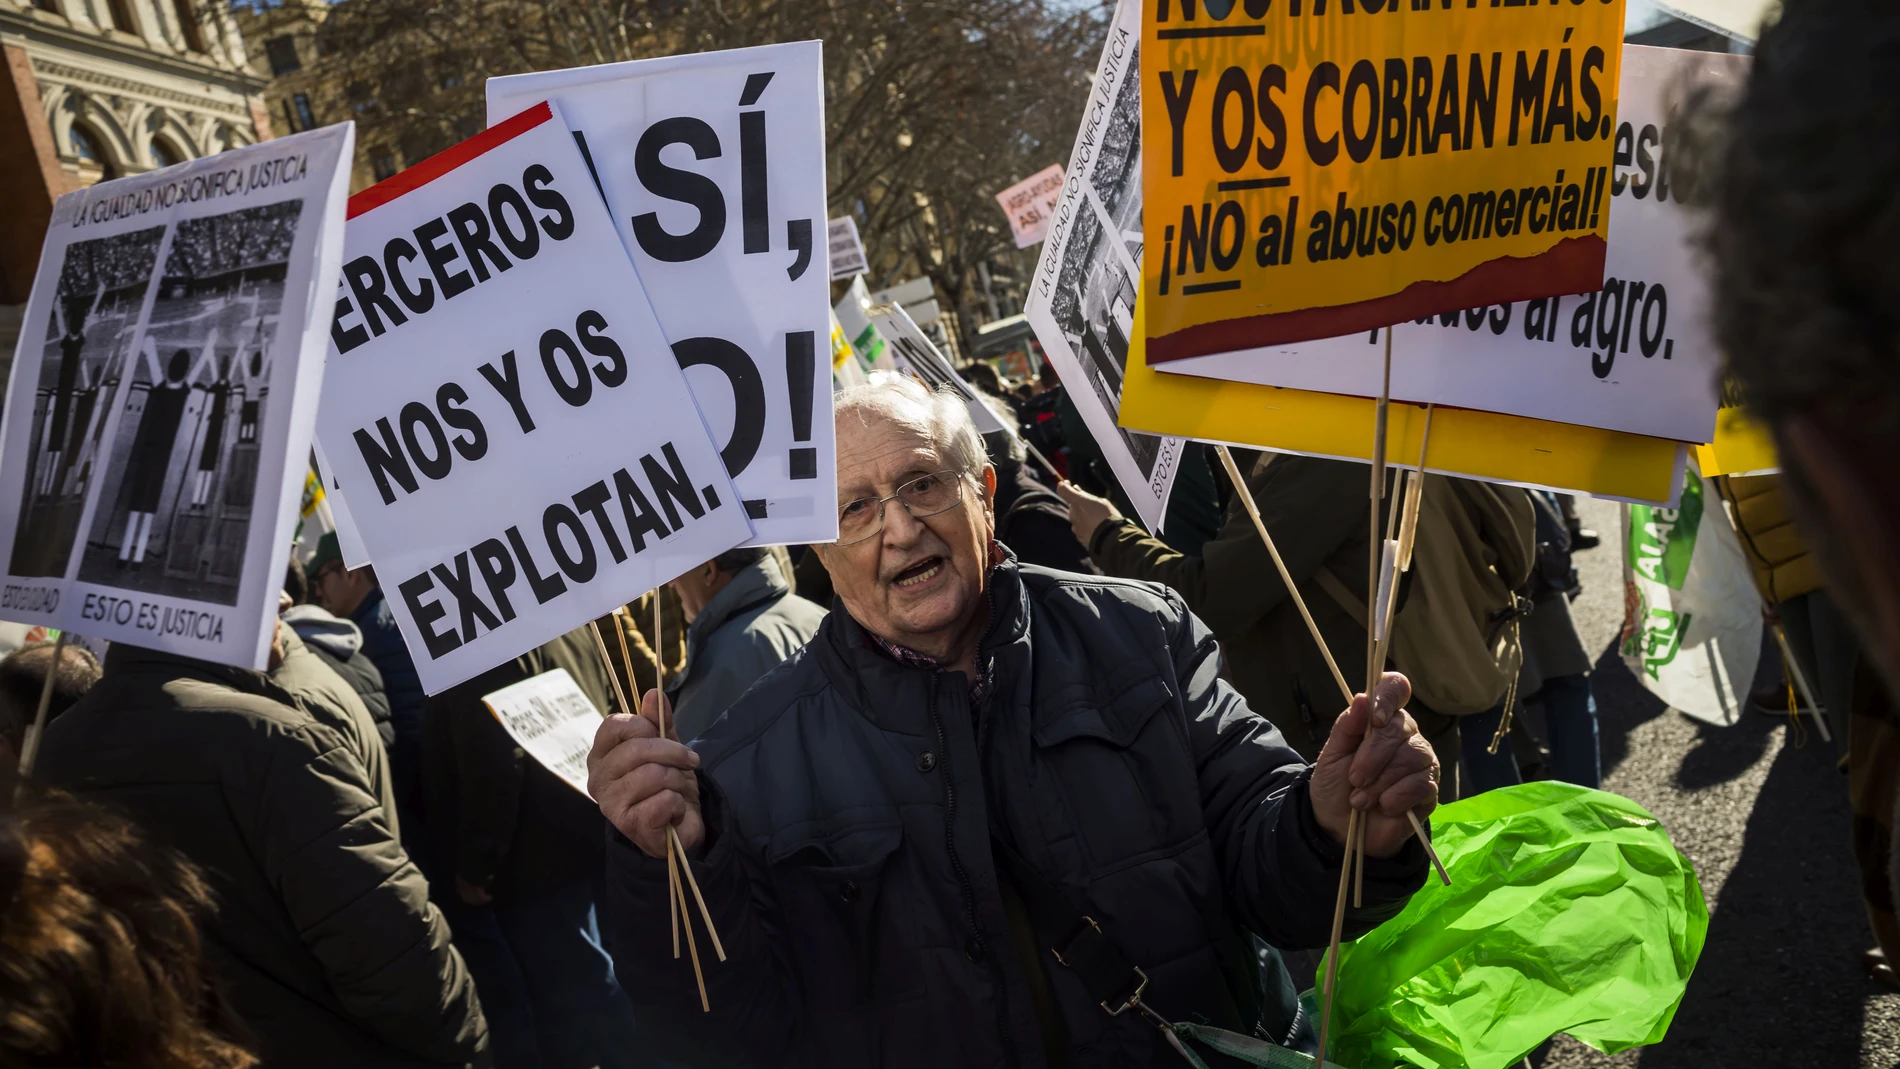 Agricultores y ganaderos protestan ante el Ministerio de Agricultura, este miércoles, en Madrid, para denunciar la situación de crisis del sector y los bajos precios en origen.© Alberto R. Roldan MADRID  05/02/2020